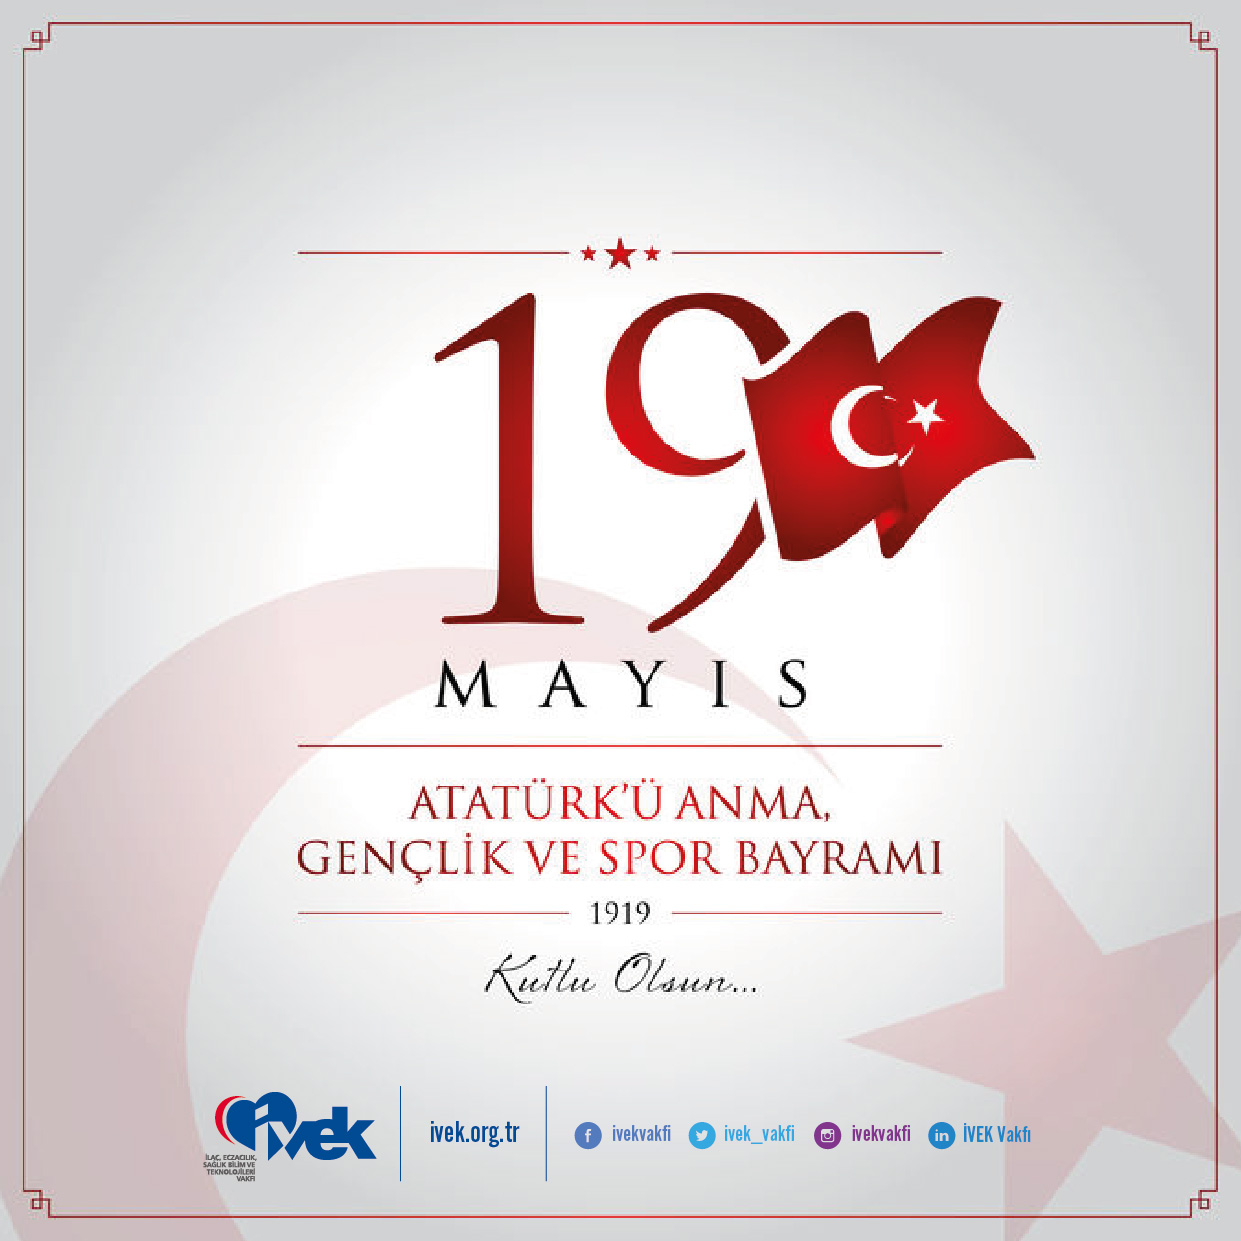  19 Mayıs Atatürk’ü Anma, Gençlik ve Spor Bayramı 